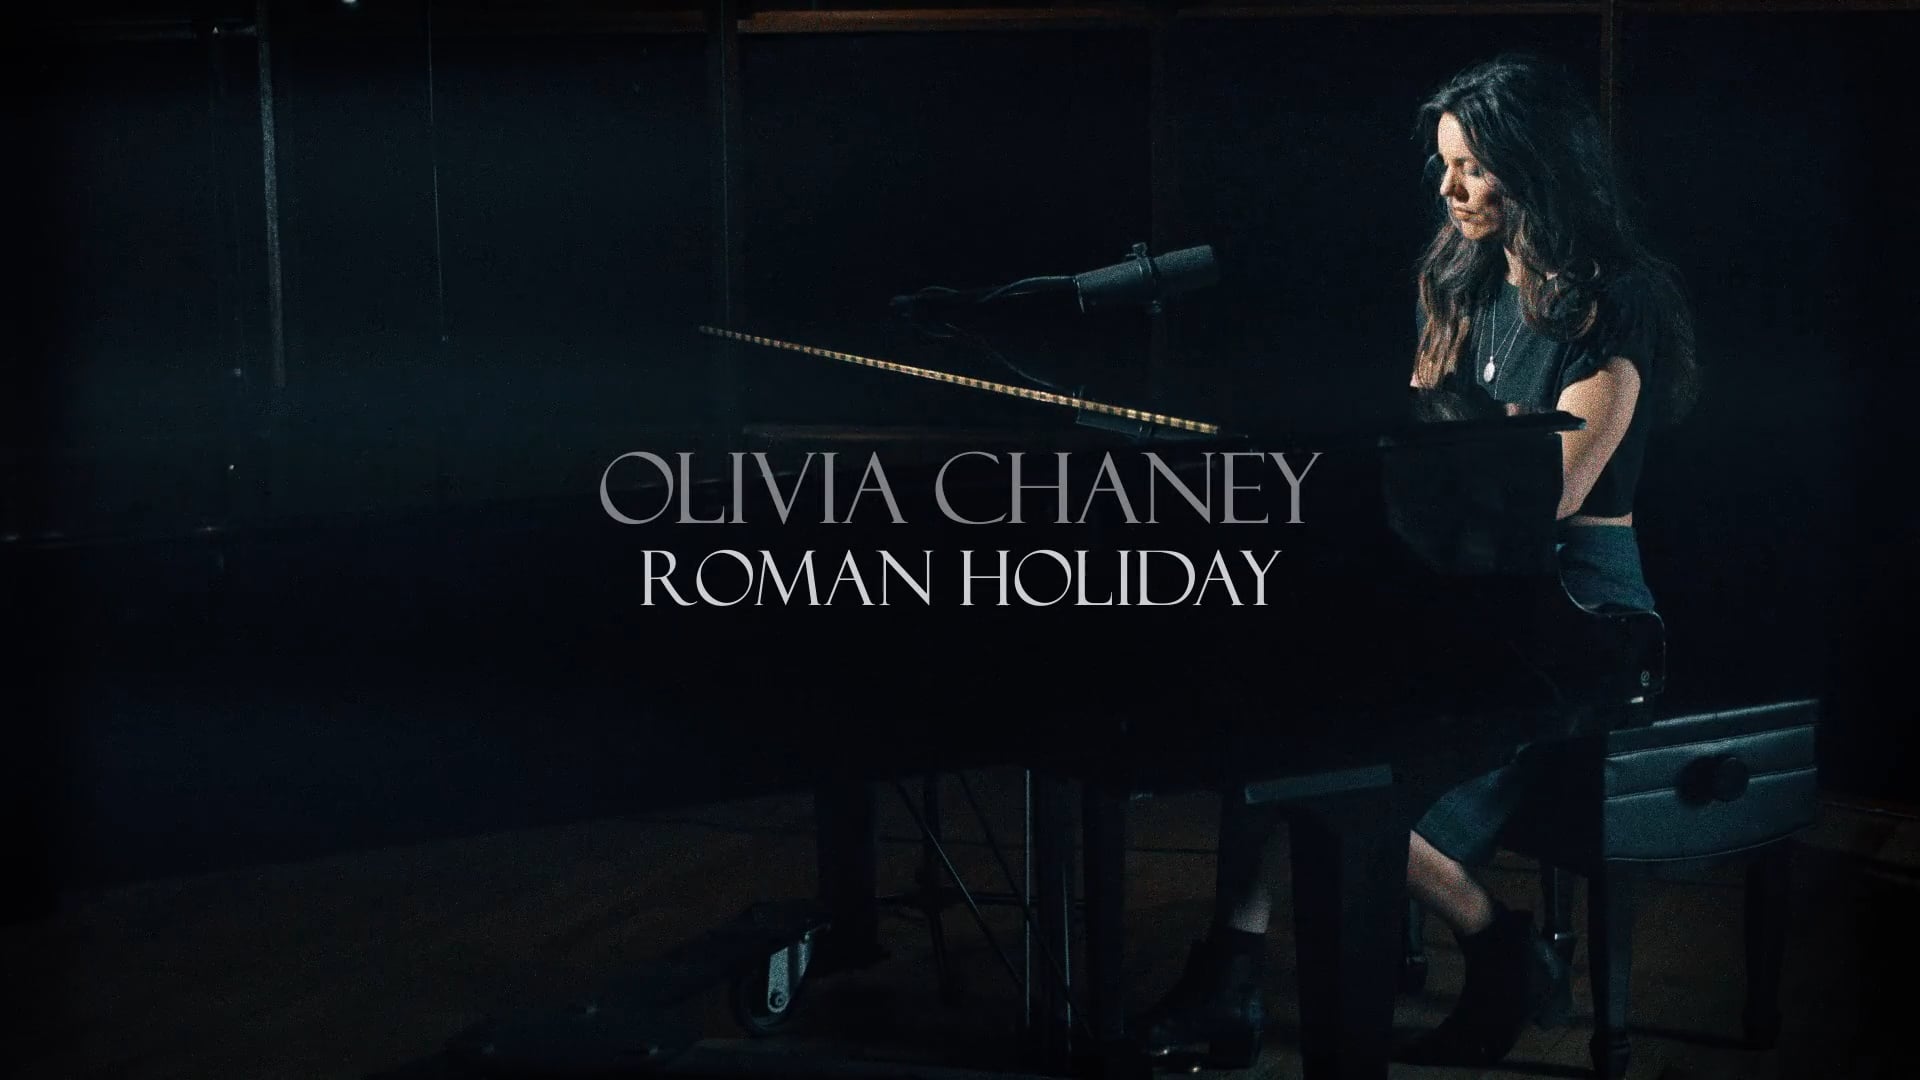 ROMAN HOLIDAY - Olivia Chaney